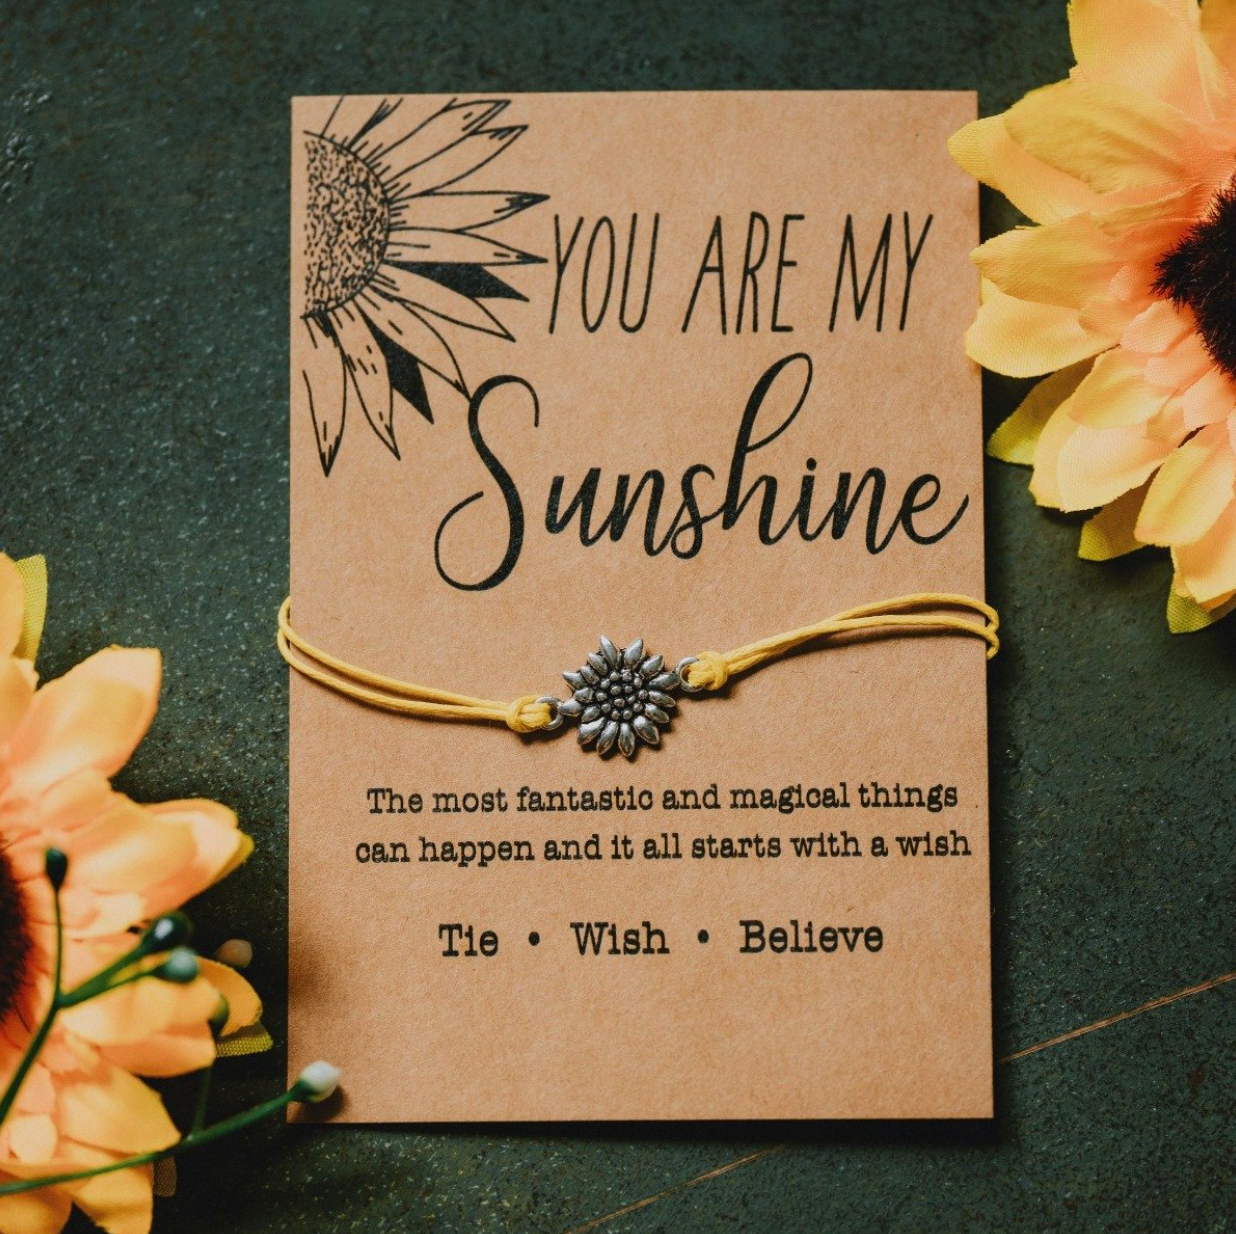 You Are My Sunshine Bracelet - Tie - Wish - Believe